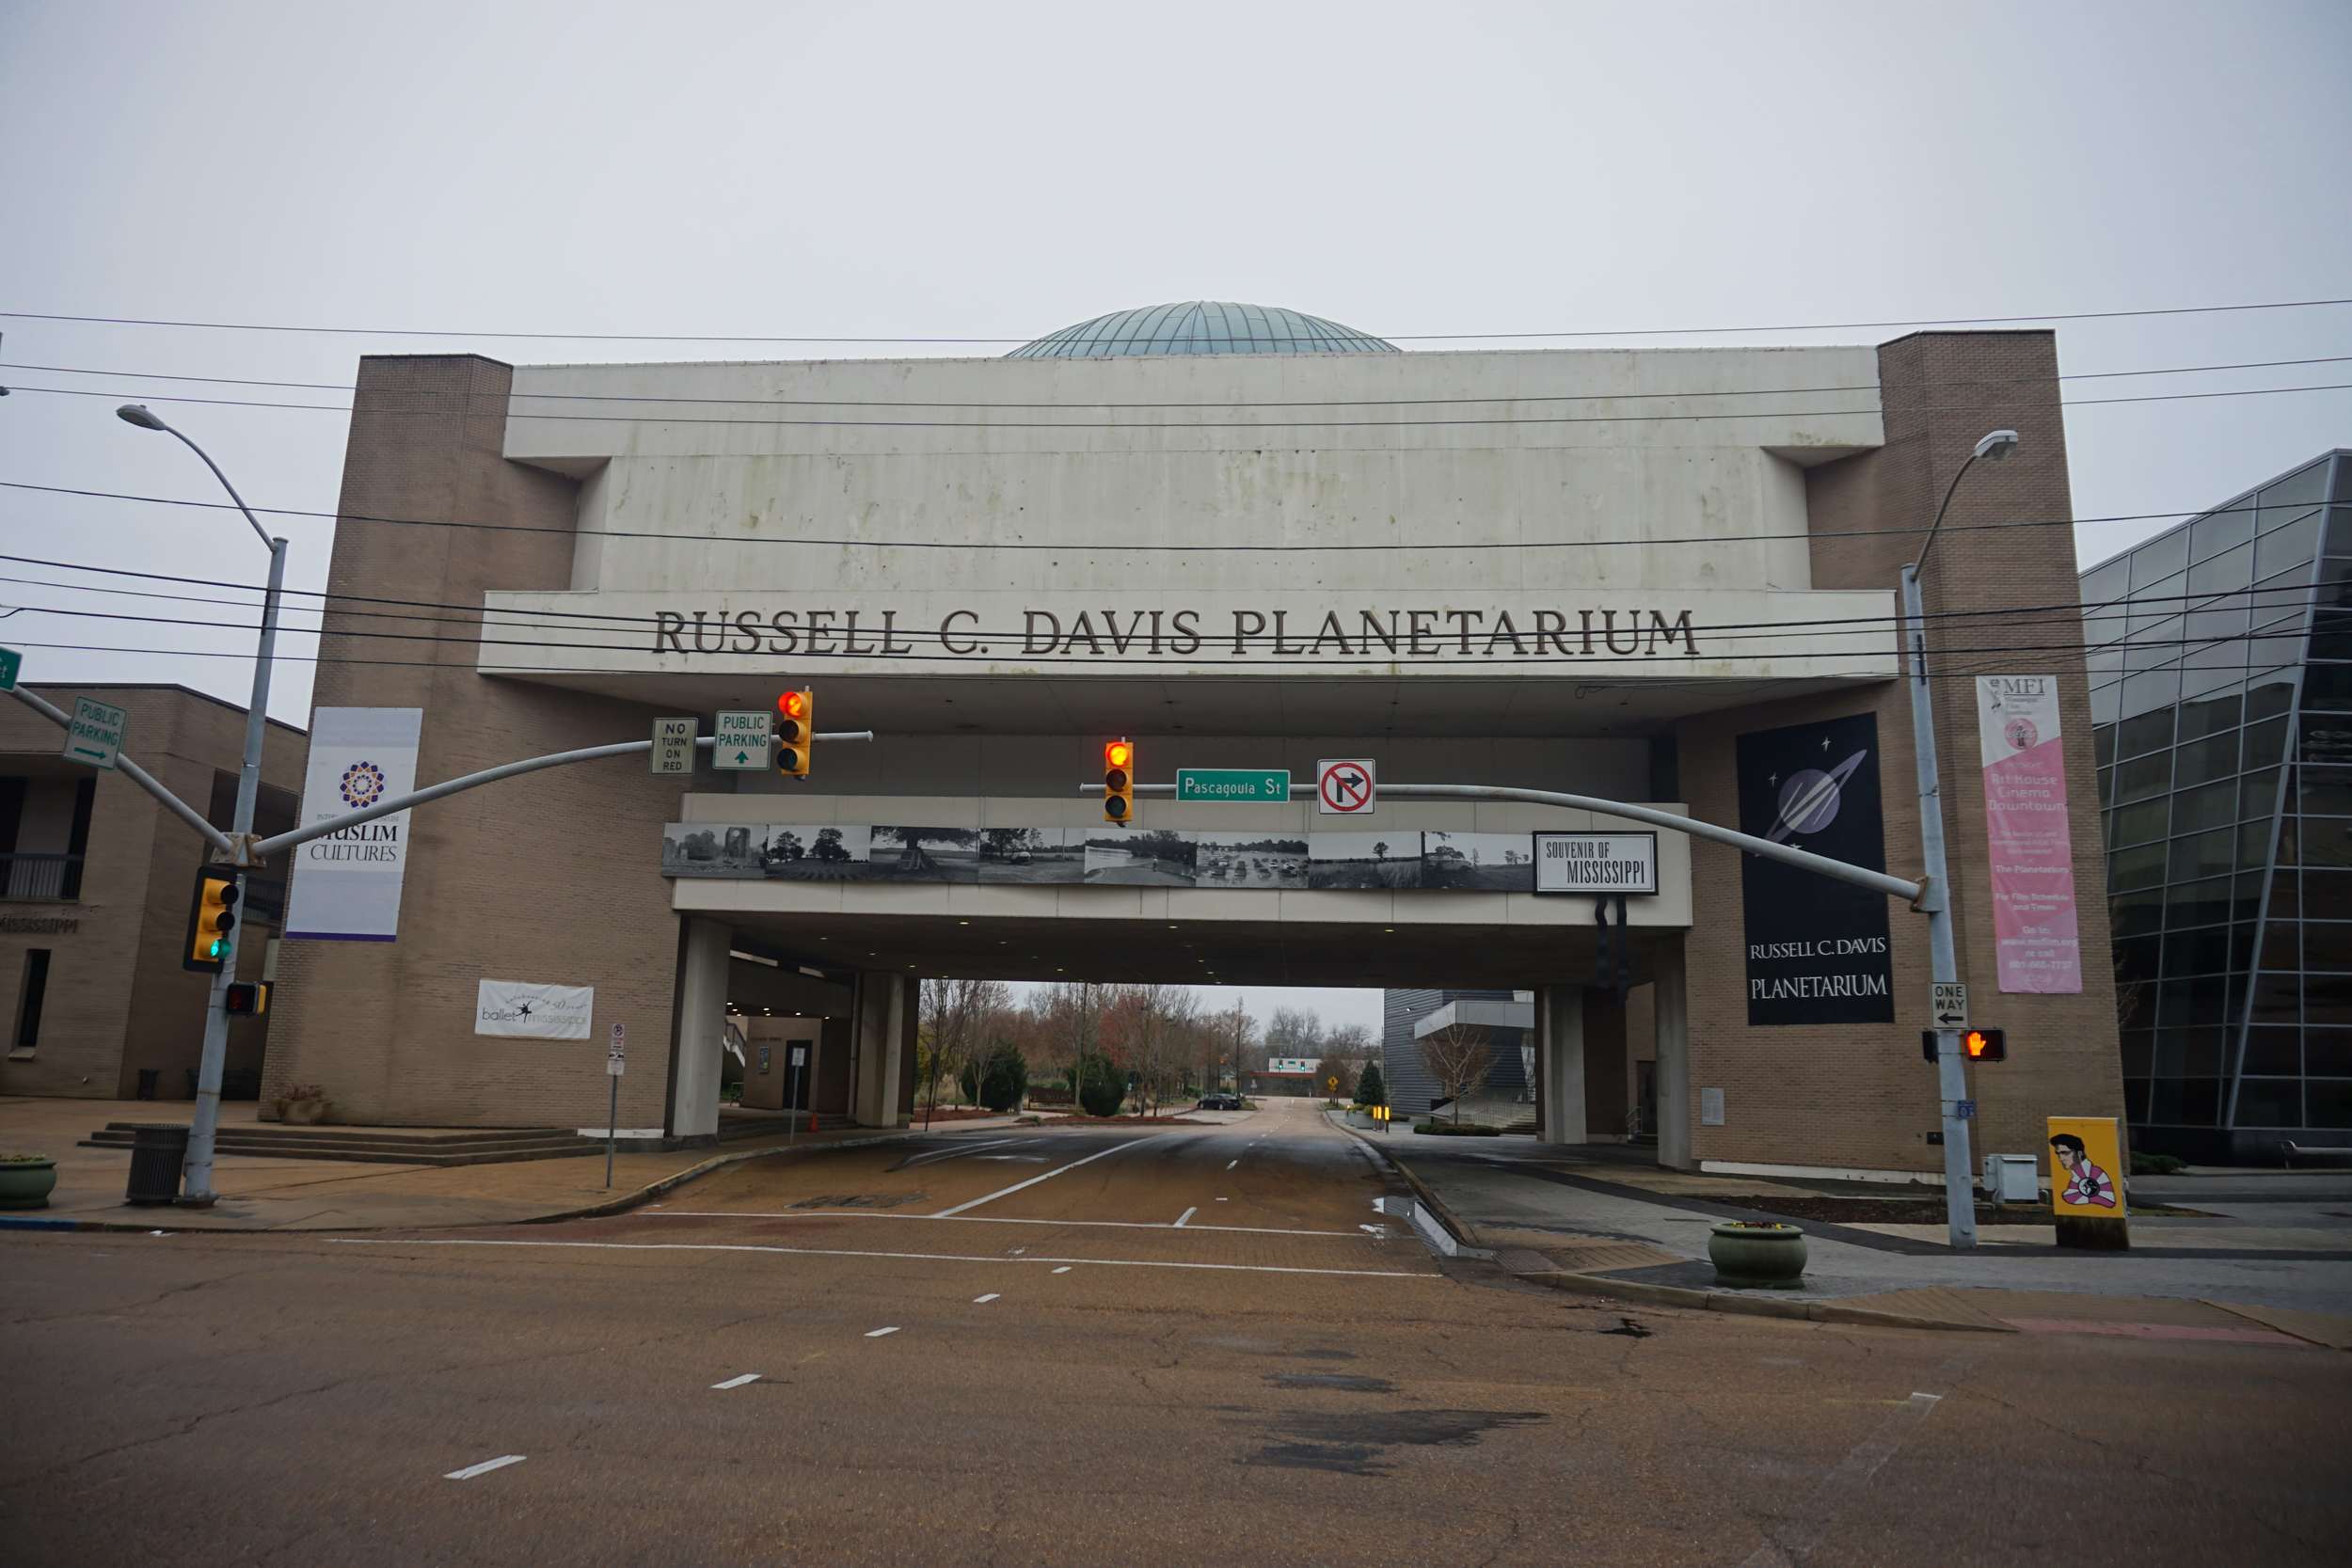 Russell C. Davis Planetarium